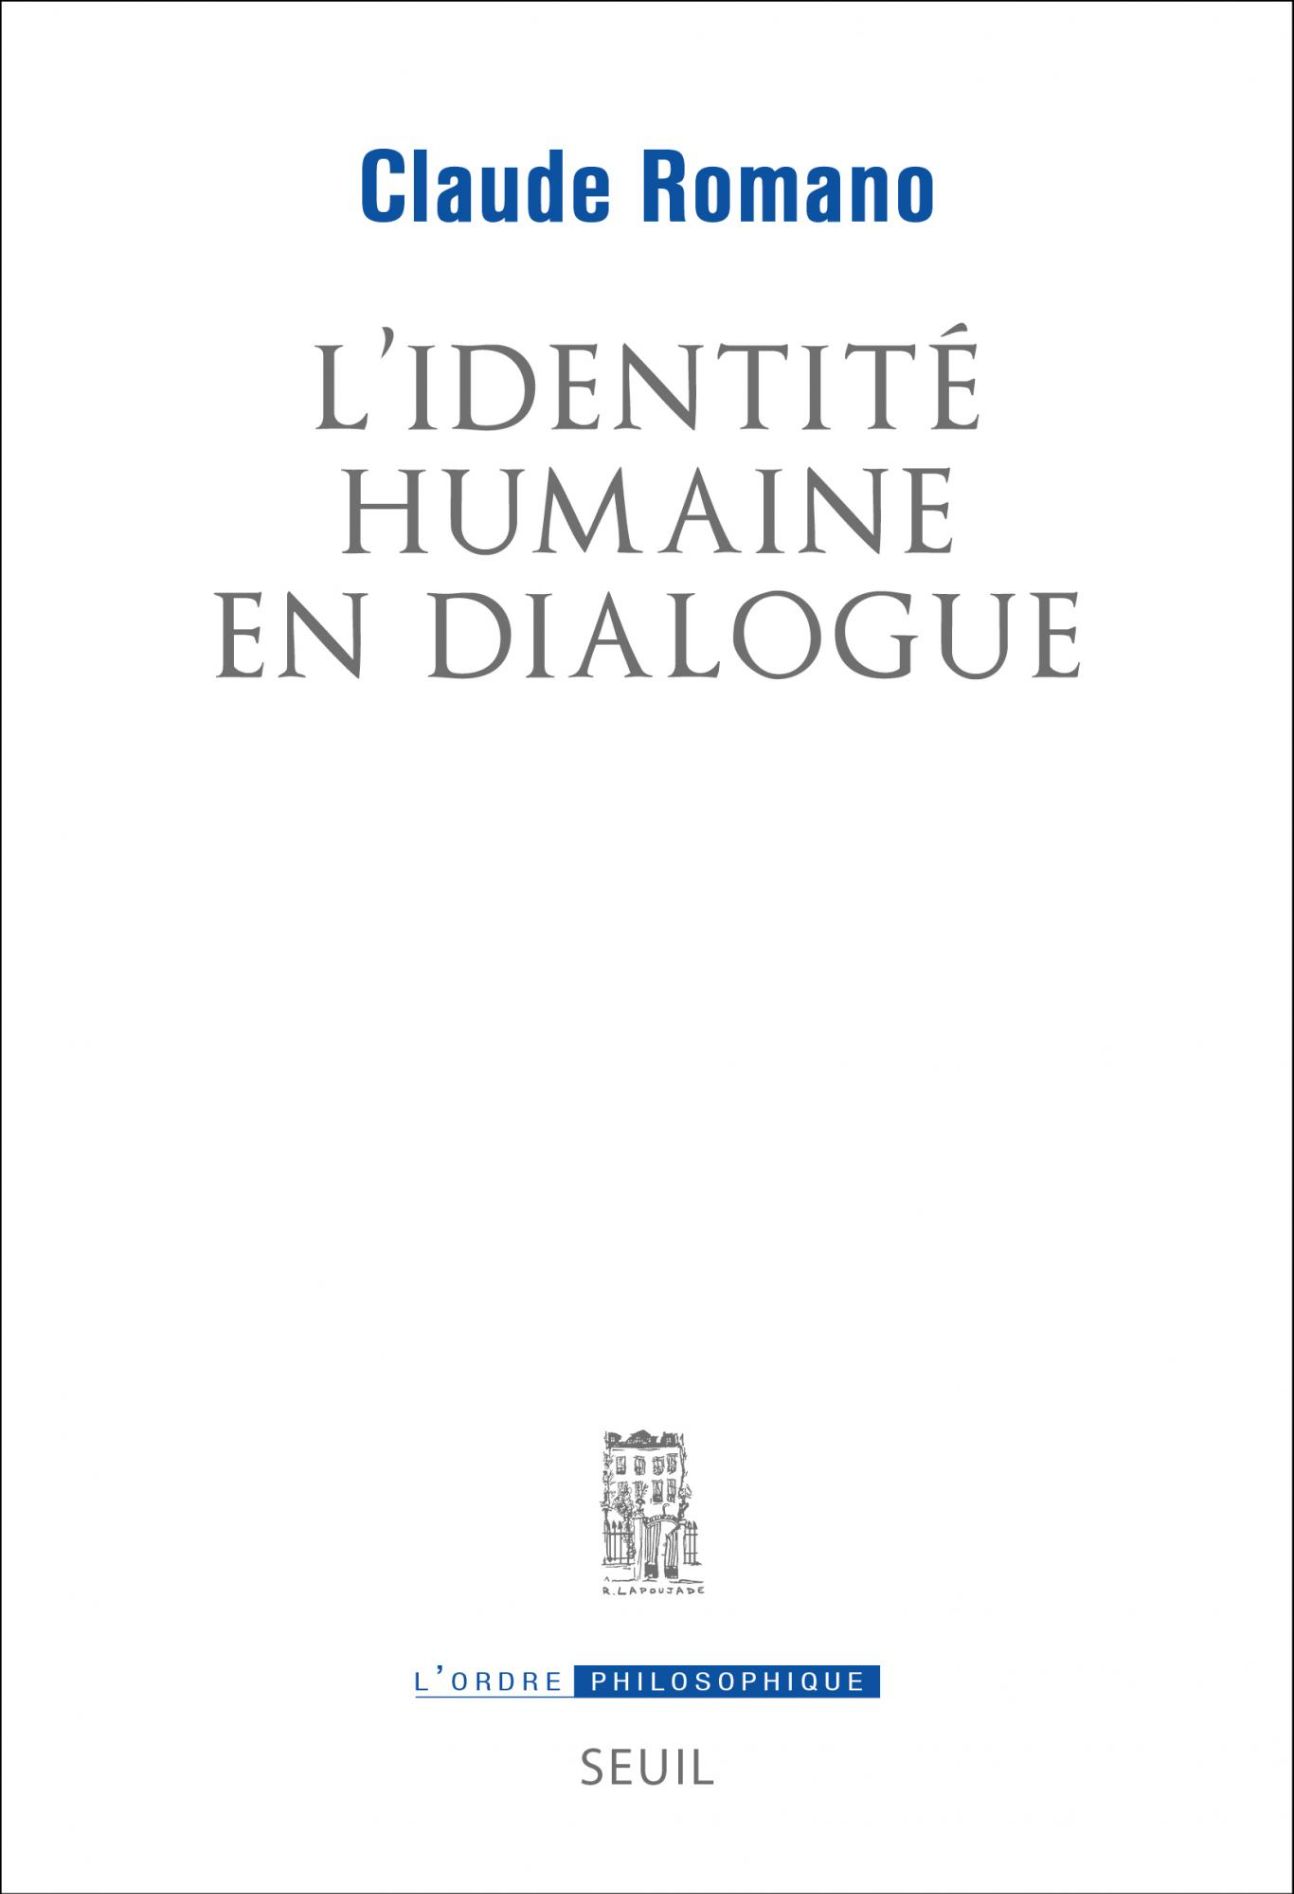 Claude Romano, L'Identité humaine en dialogue